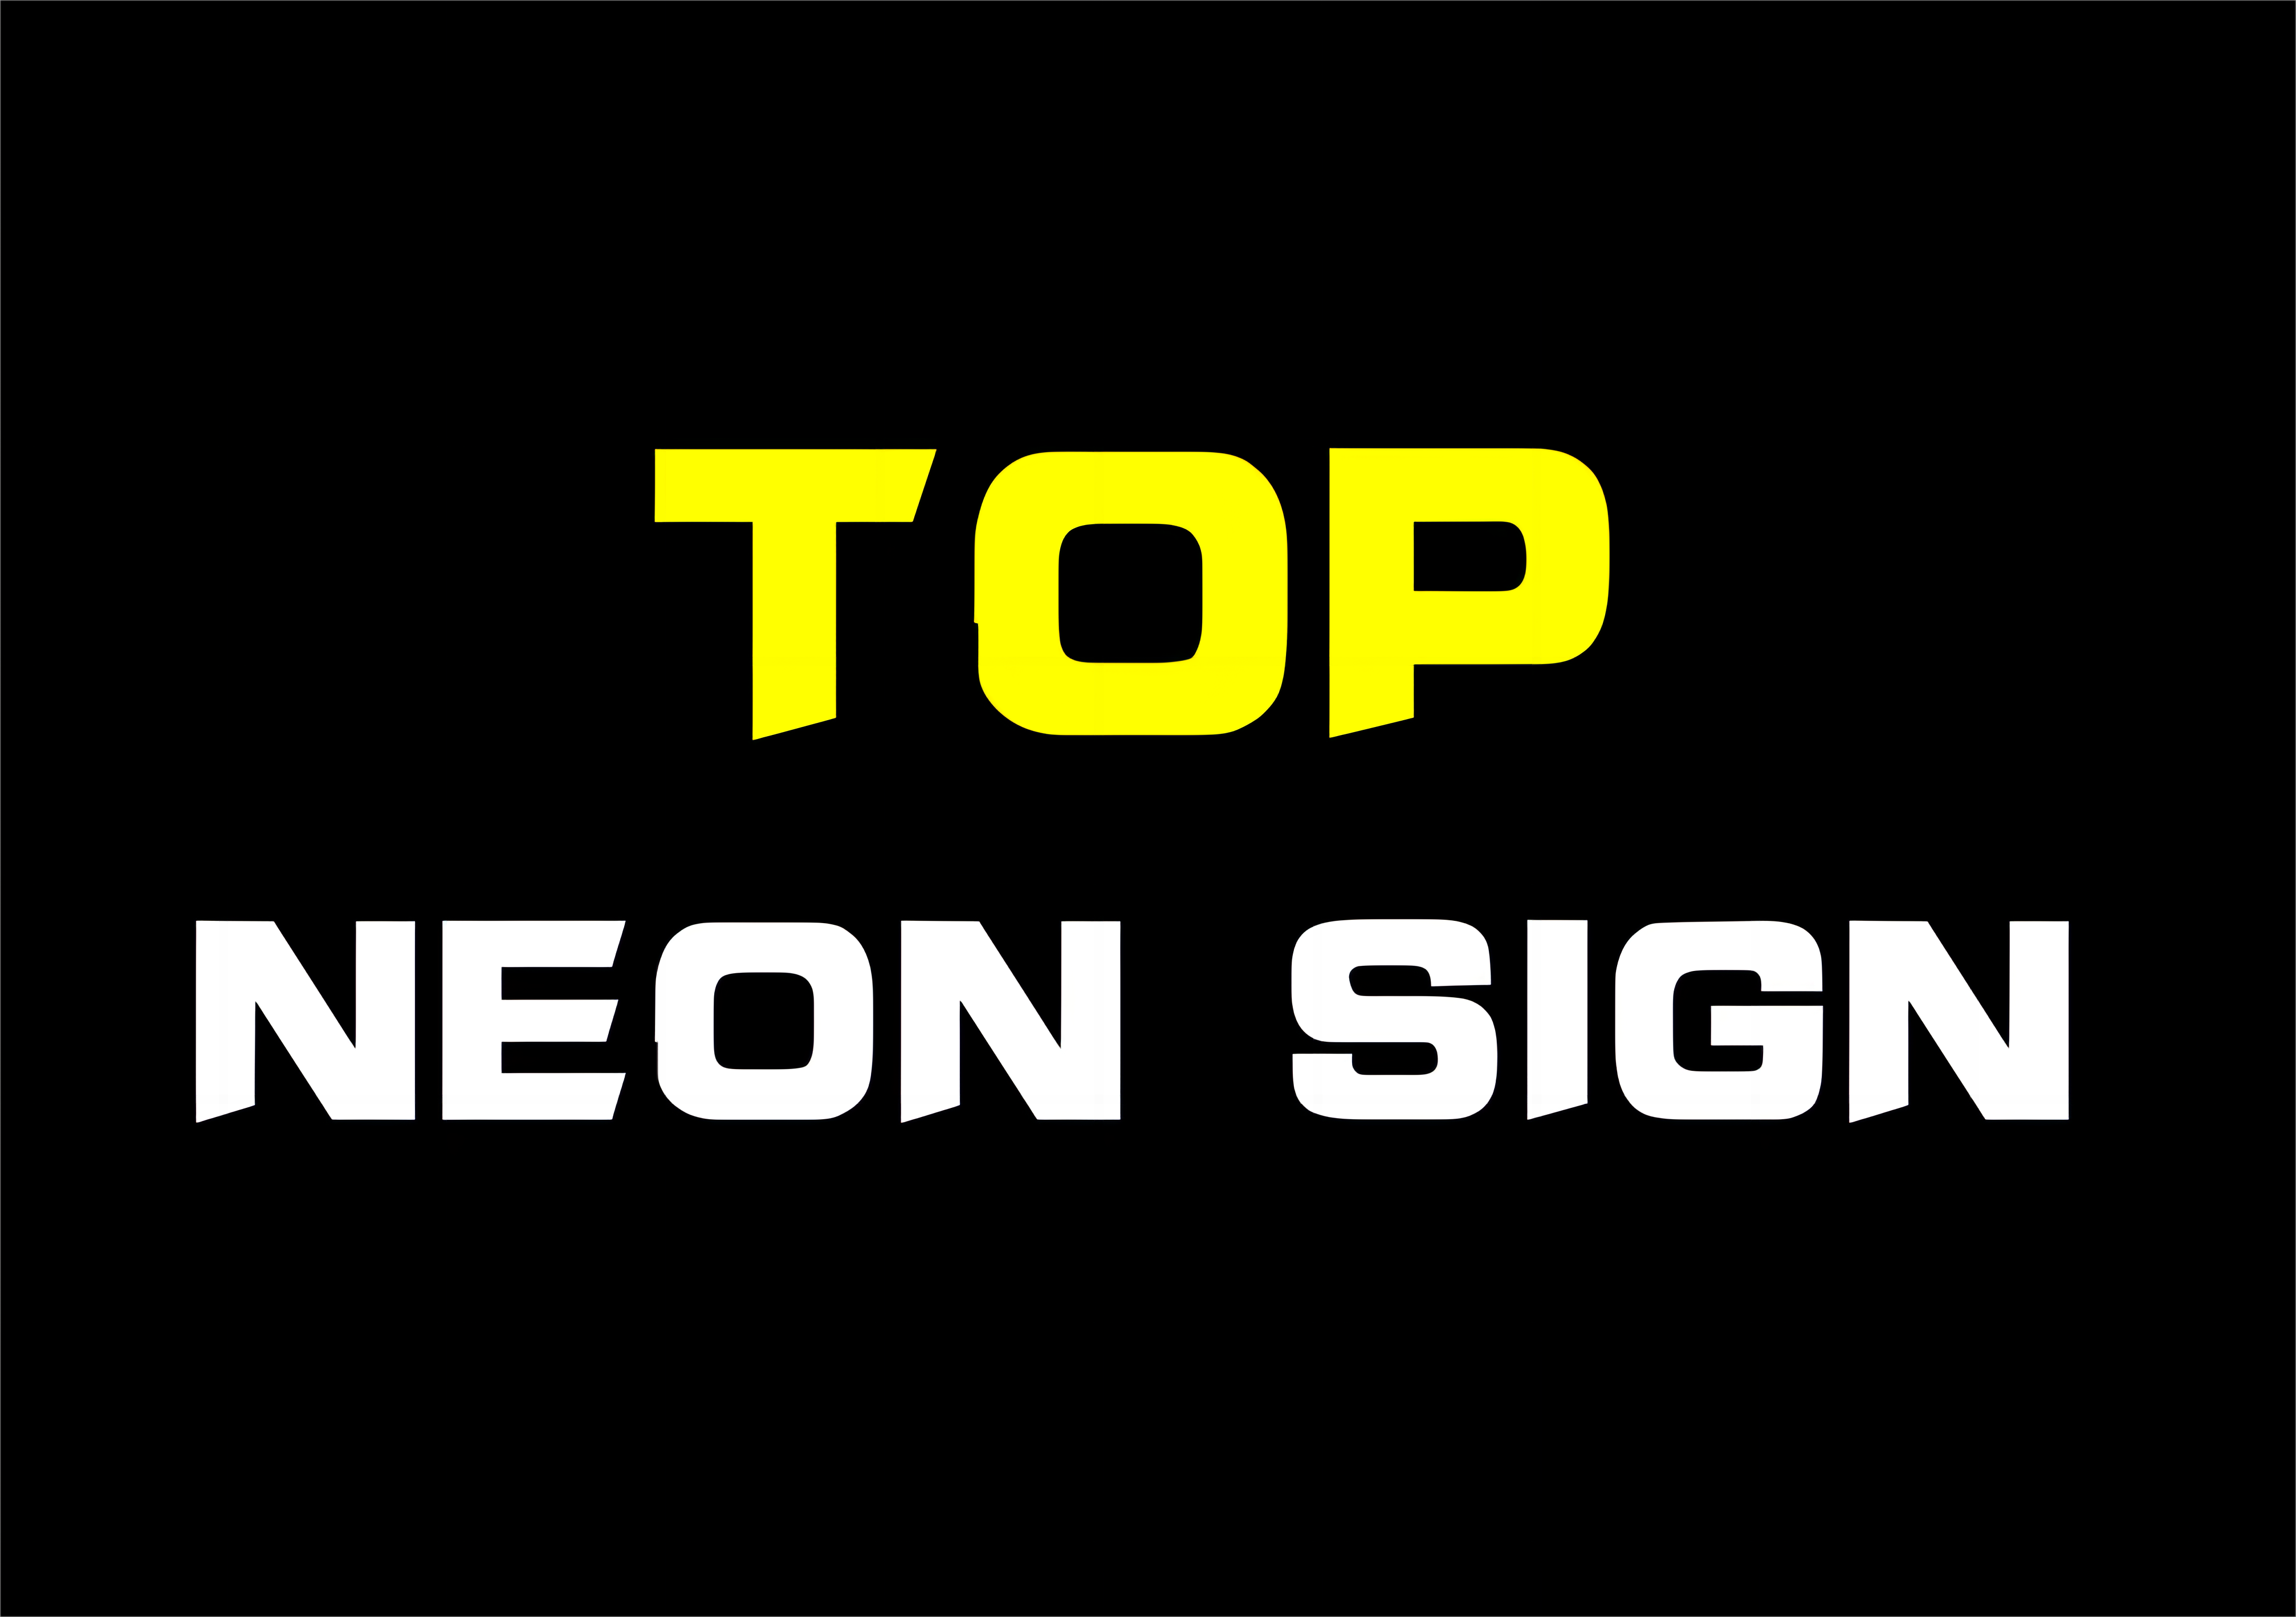 Top neon sign